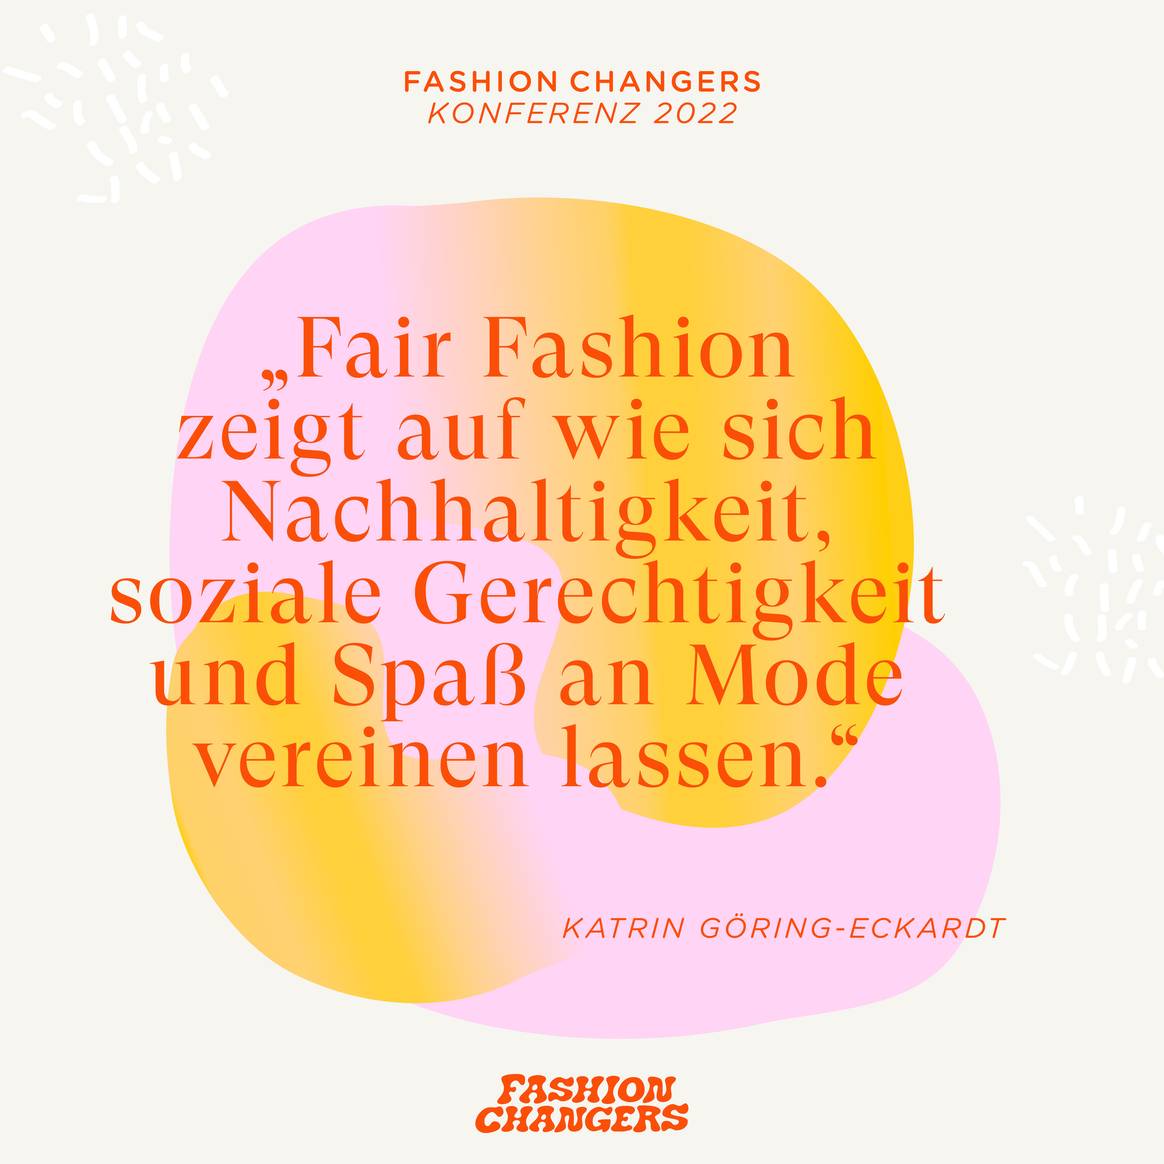 Zitat von Politikerin Katrin Göring-Eckardt. Bild: Fashion Changers